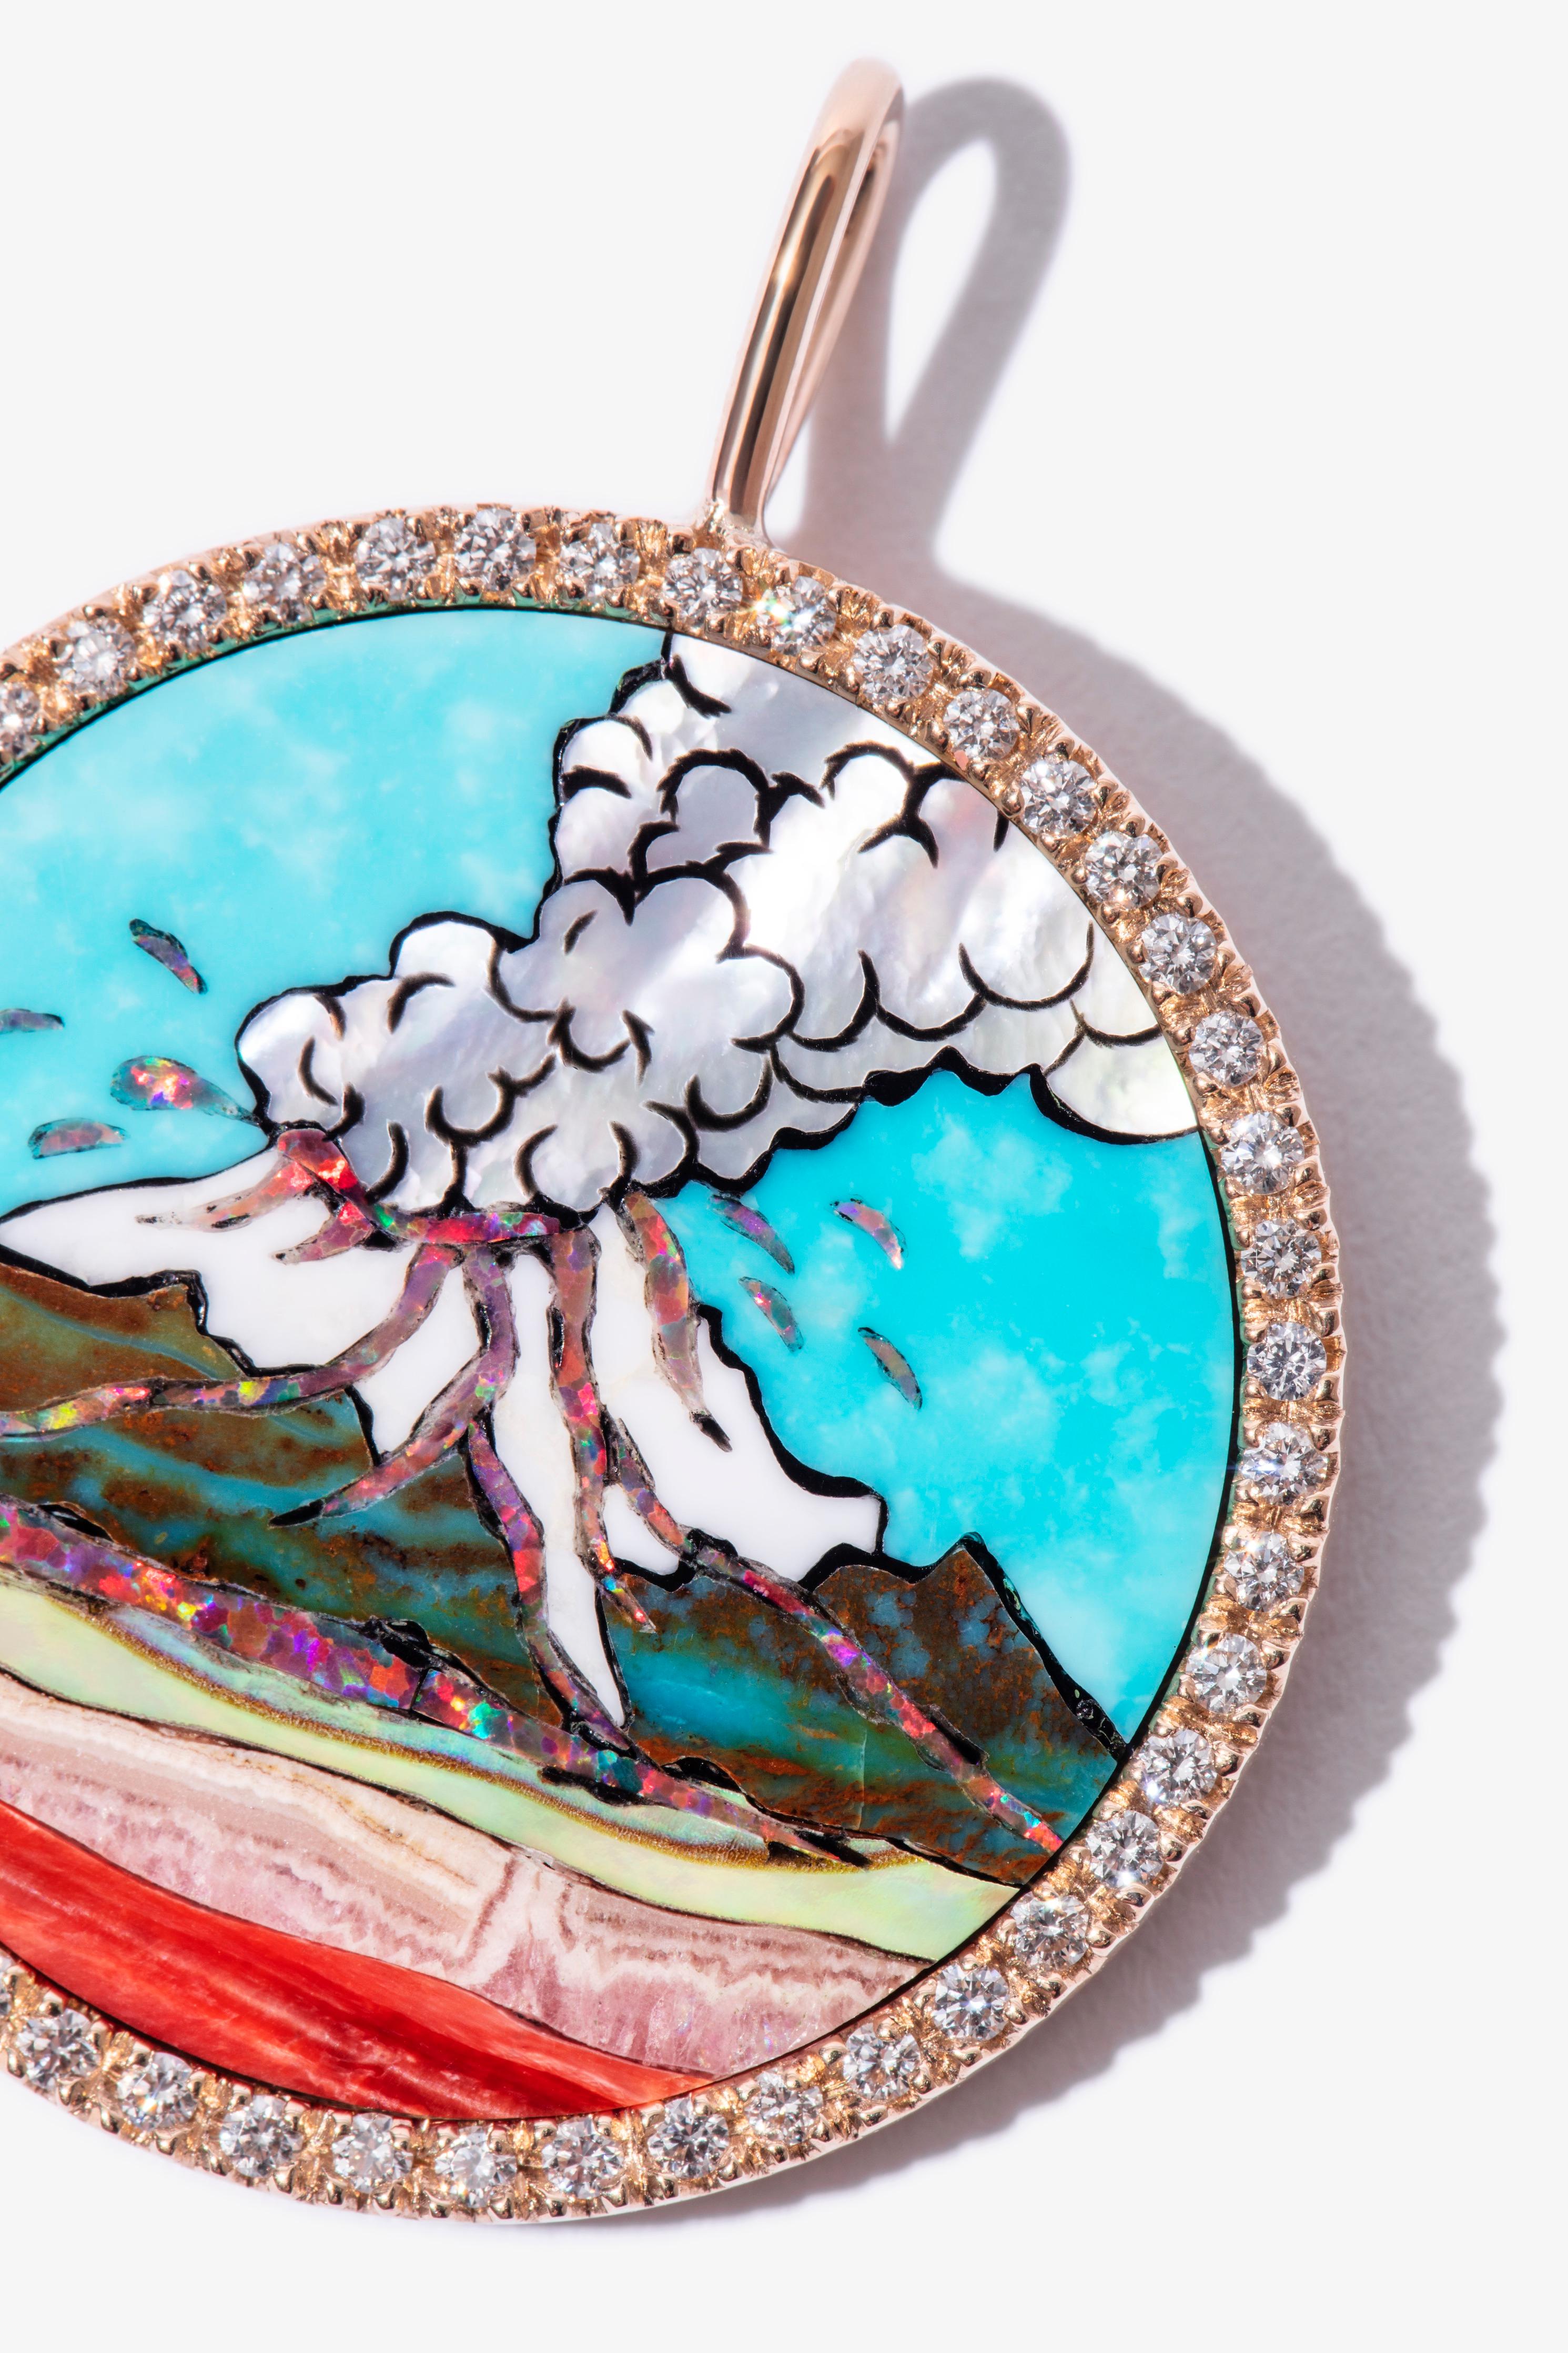 Ein lebendiges, auffälliges Medaillon, inspiriert von unserer Faszination für den Vulkan El Popocatépetl und die Arbeit des mexikanischen Künstlers Dr. Atl.

Navajo-Intarsien aus 14-karätigem Gold, besetzt mit schimmernden weißen